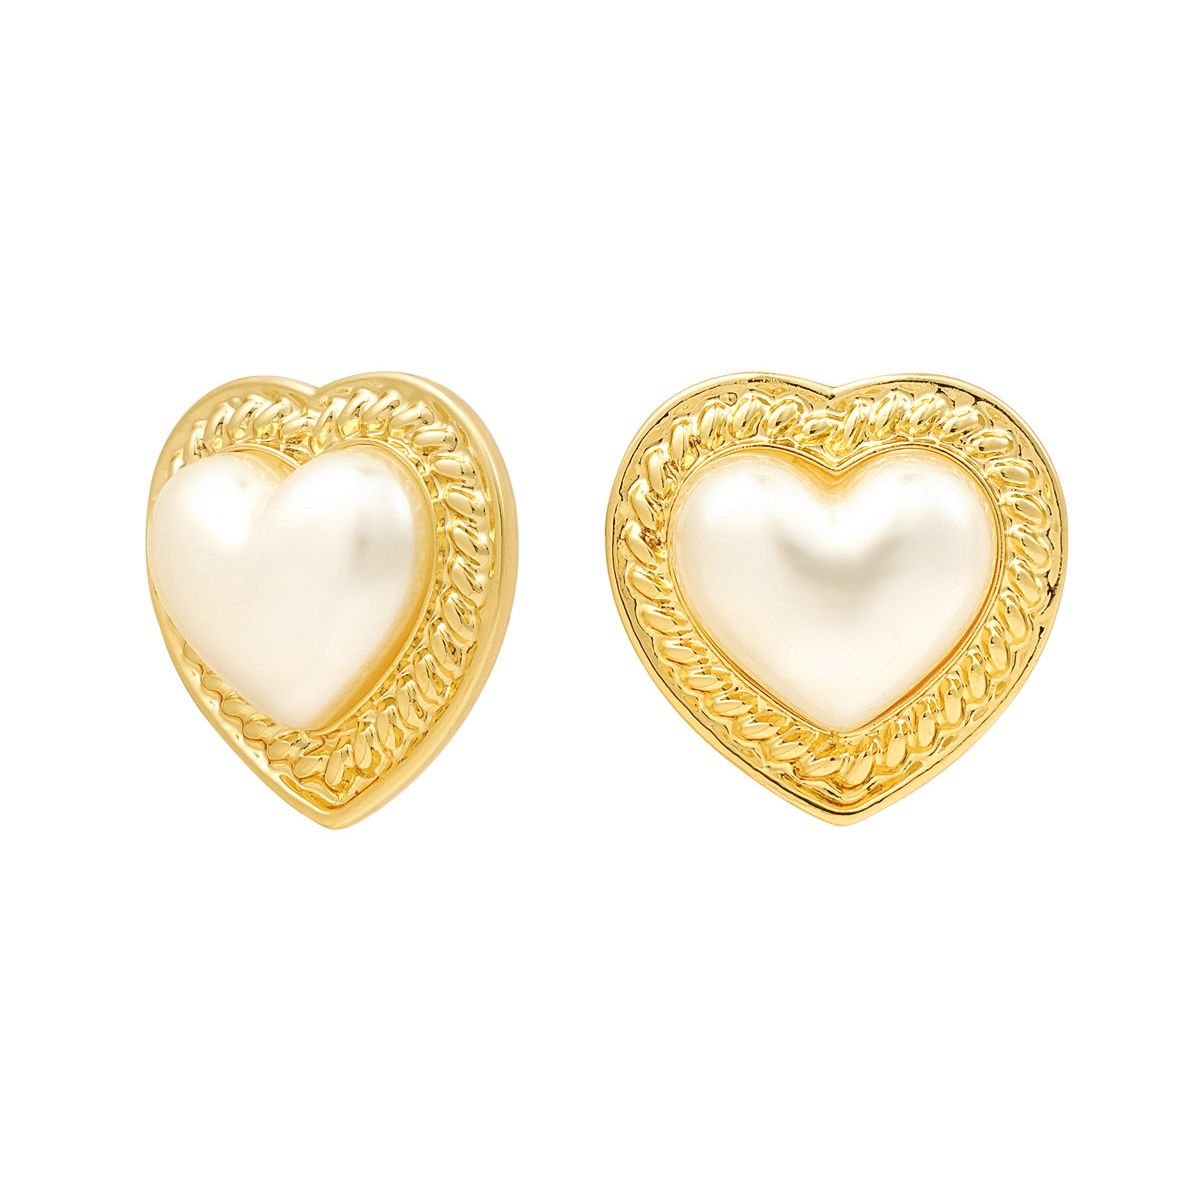 pearl-heart-stud-earrings